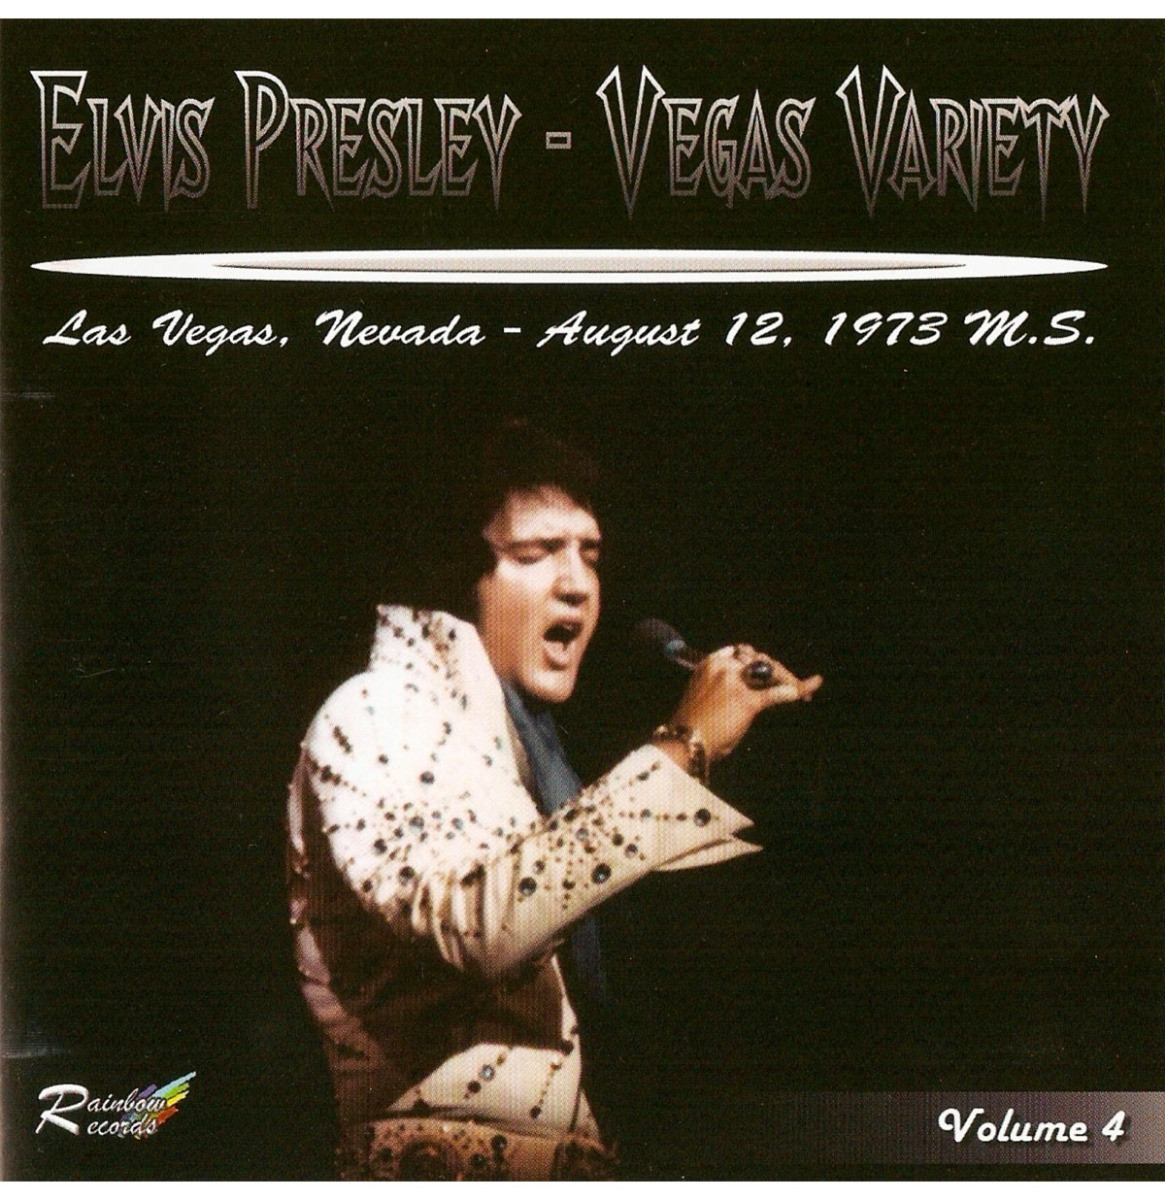 Elvis Presley- Vegas Variety Vol. 4 Las Vegas August 12, 1973 CD